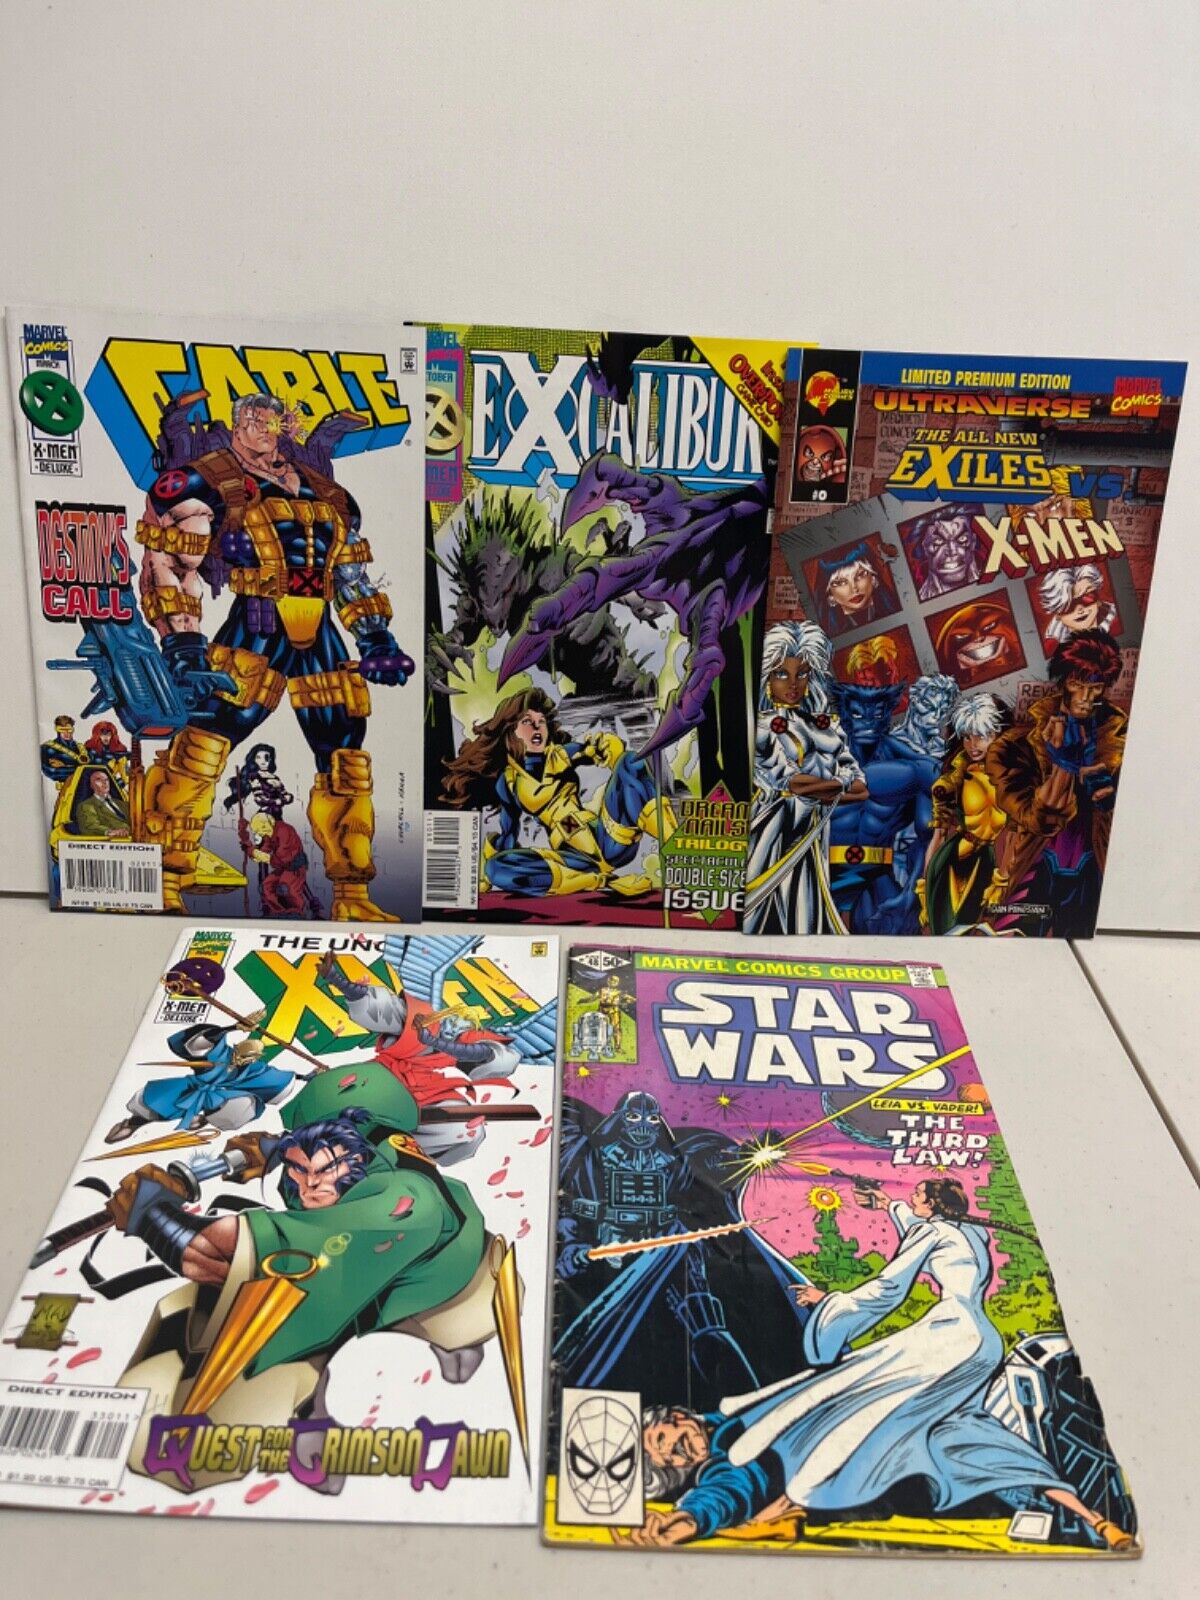 Comic Books Mixed Lot of 5-Star Wars Leia Vs Vader, Exiles, Exaclibur, X-men